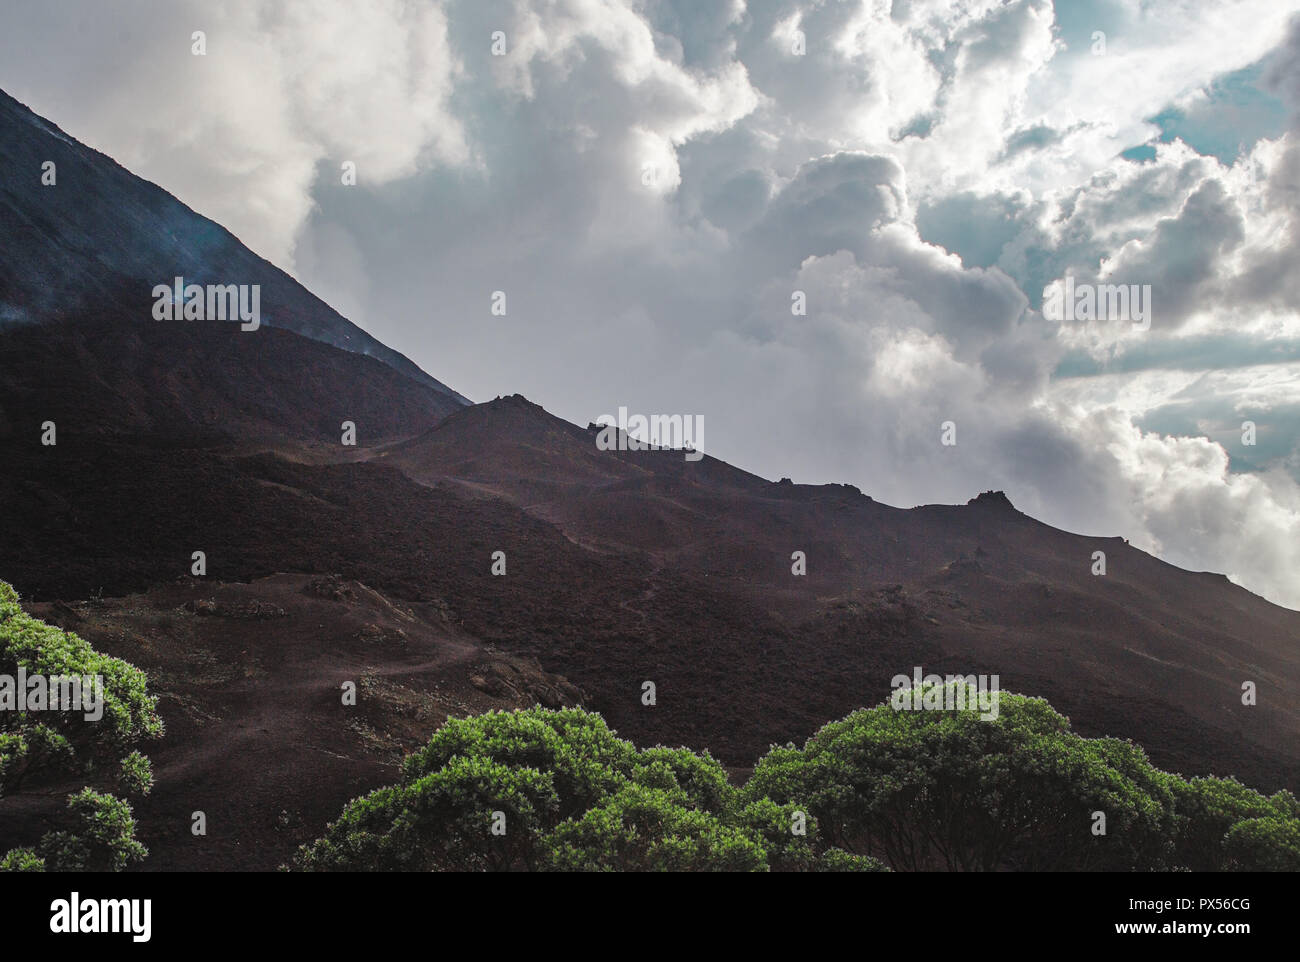 Touristen Wanderung die wechselnden Landschaften rund um den Vulkan Pacaya, einer der aktivsten Vulkane Guatemalas, aus schwarzem Vulkangestein zu üppigen grünen Fores Stockfoto